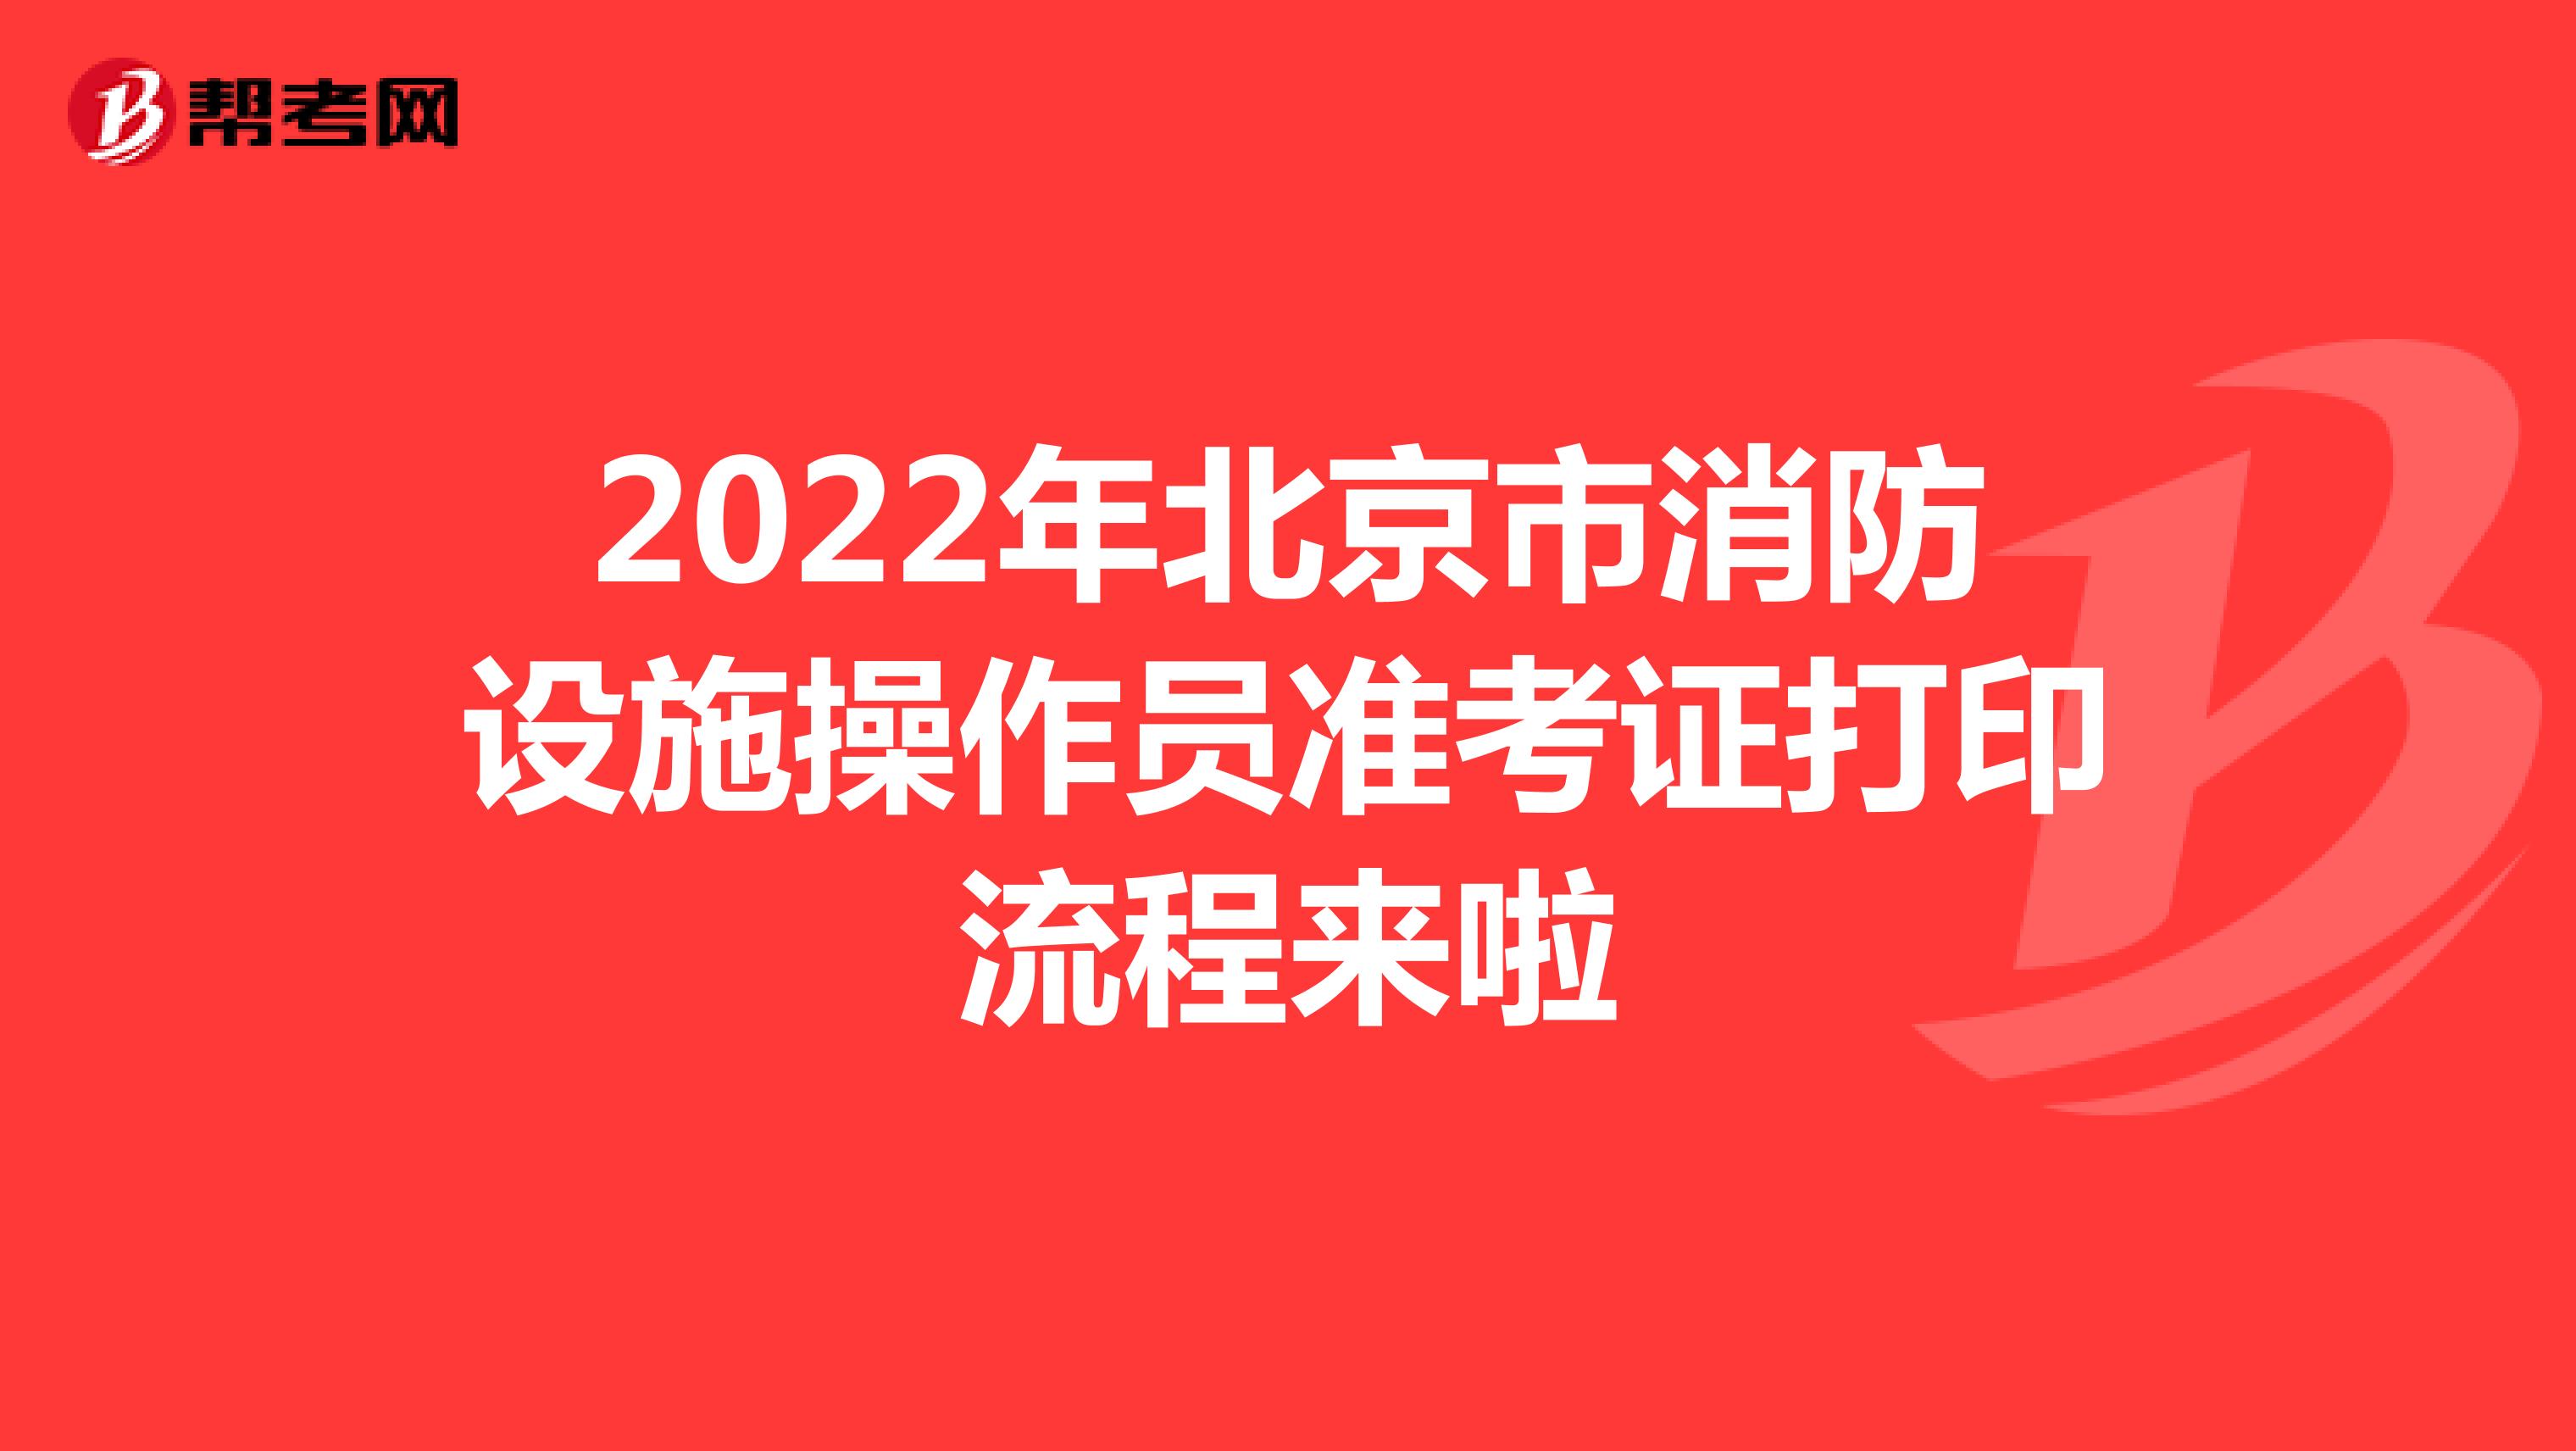 2022年北京市消防设施操作员准考证打印流程来啦